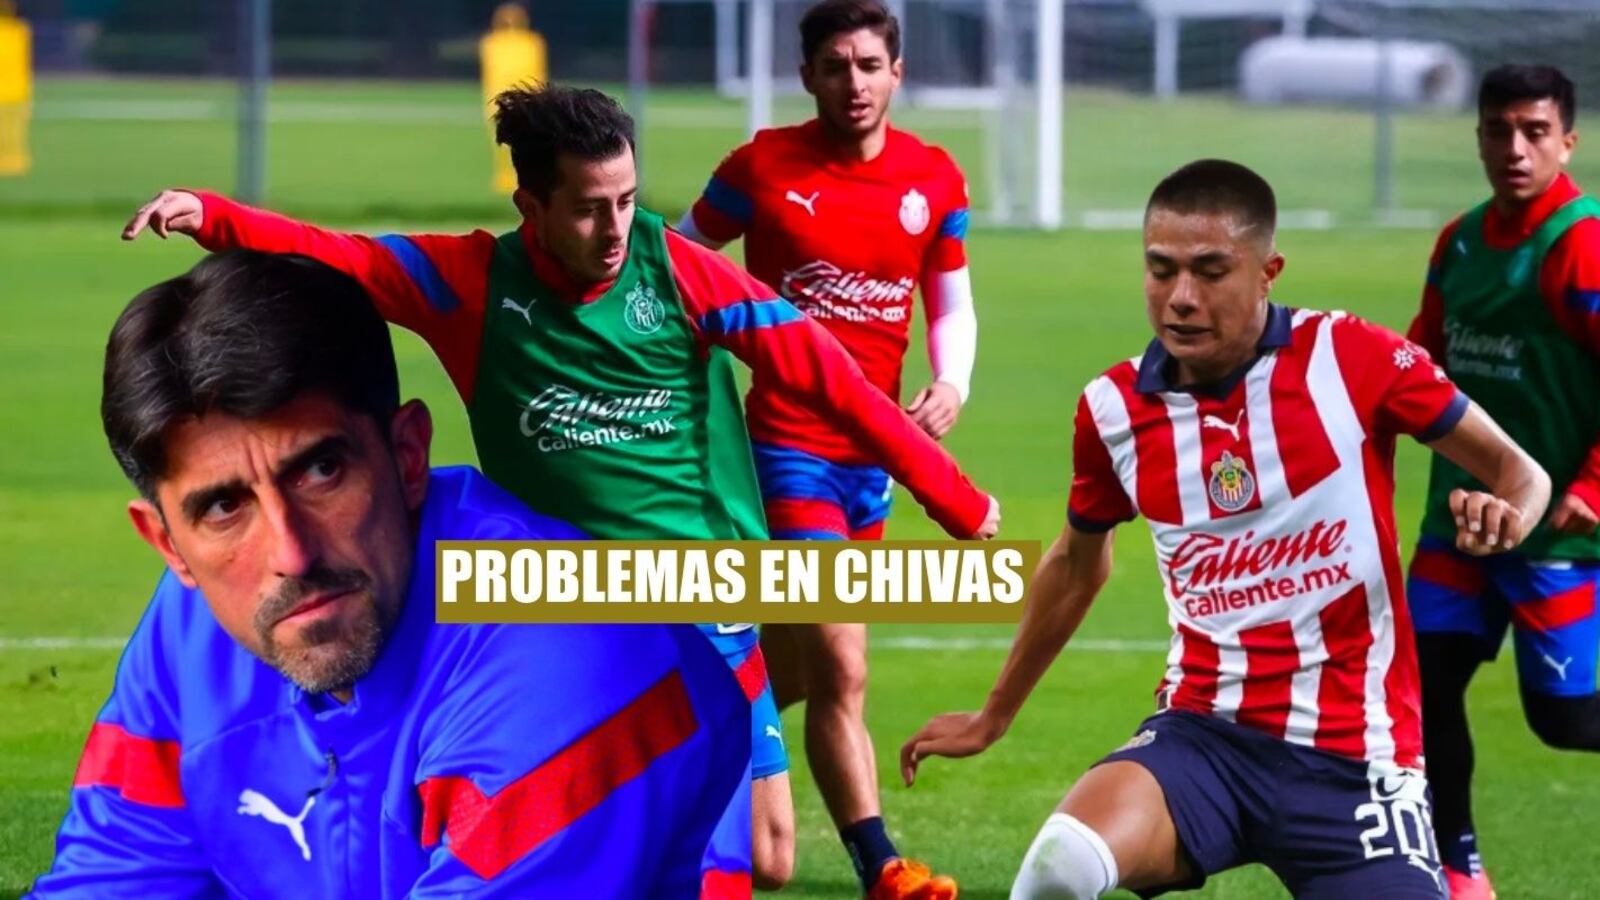 Conmoción en Chivas, lo que hará Paunovic con Padilla tras patear a un jugador